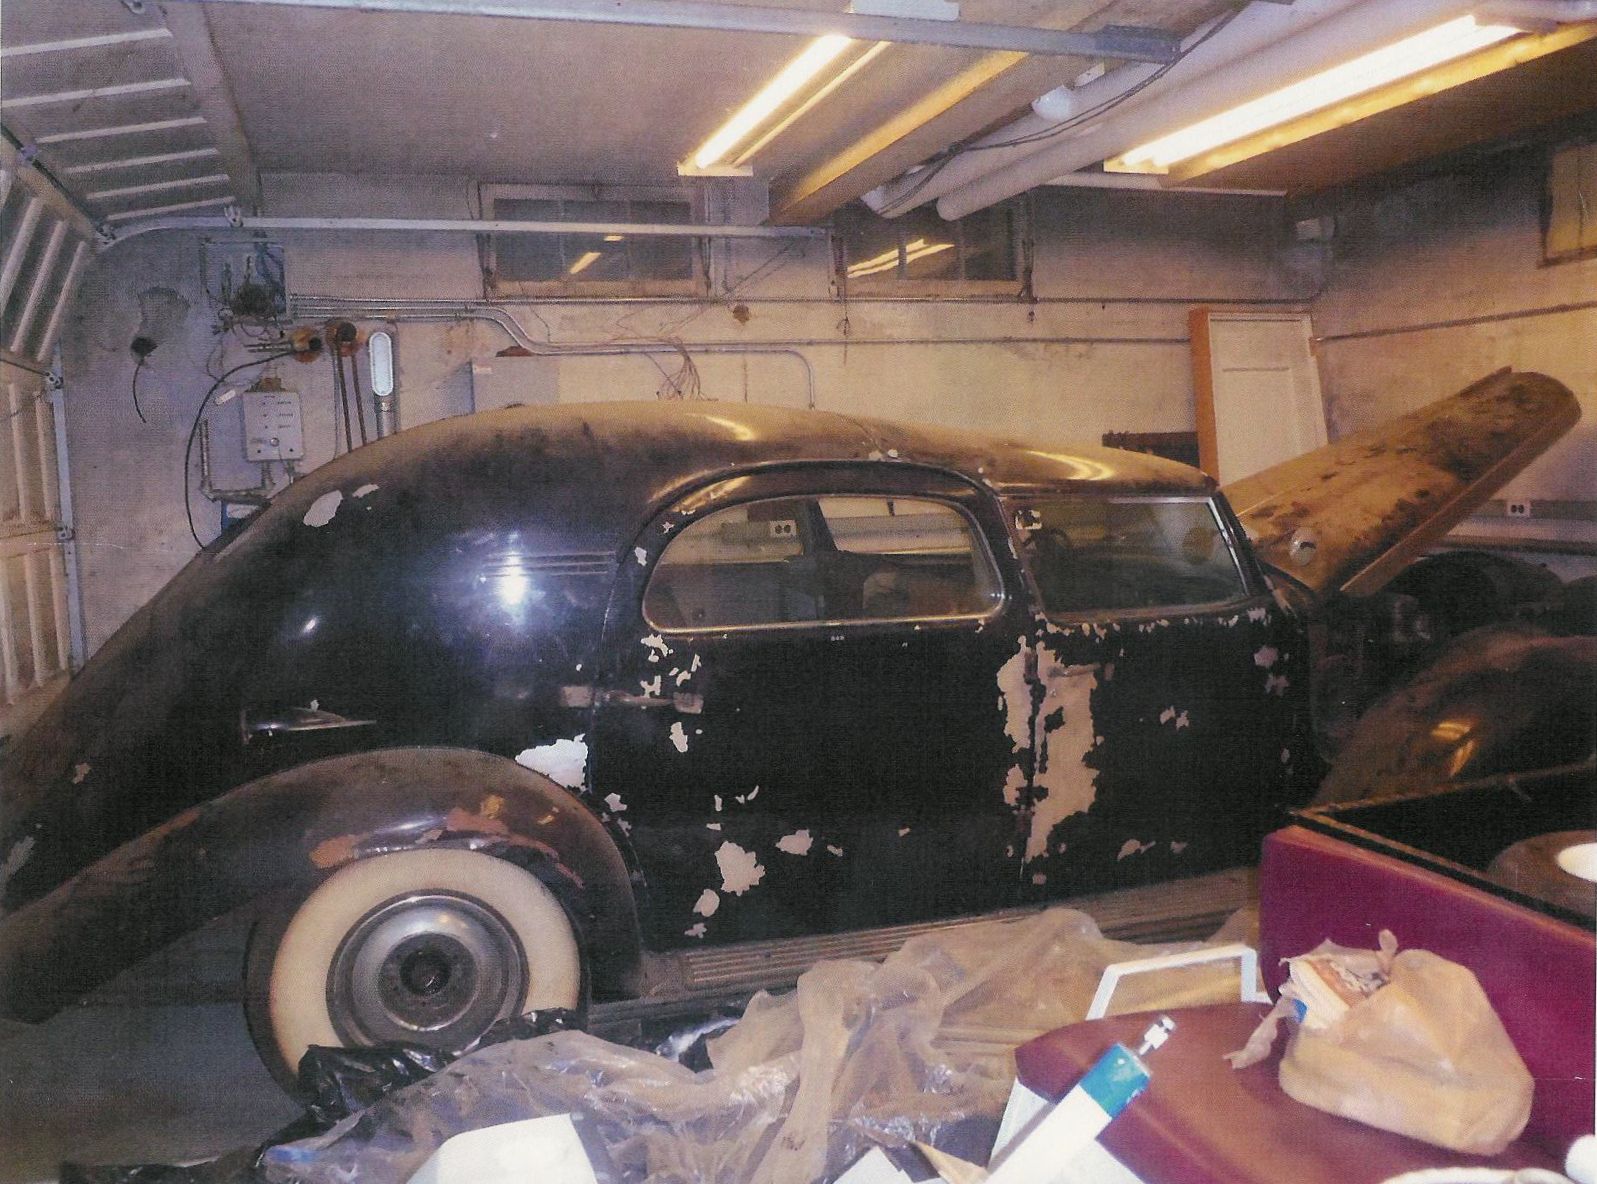 chrysler_c15_custom_imperial_lebaron_limousine_1937_for_mrs_chrysler_before_restoration.jpg